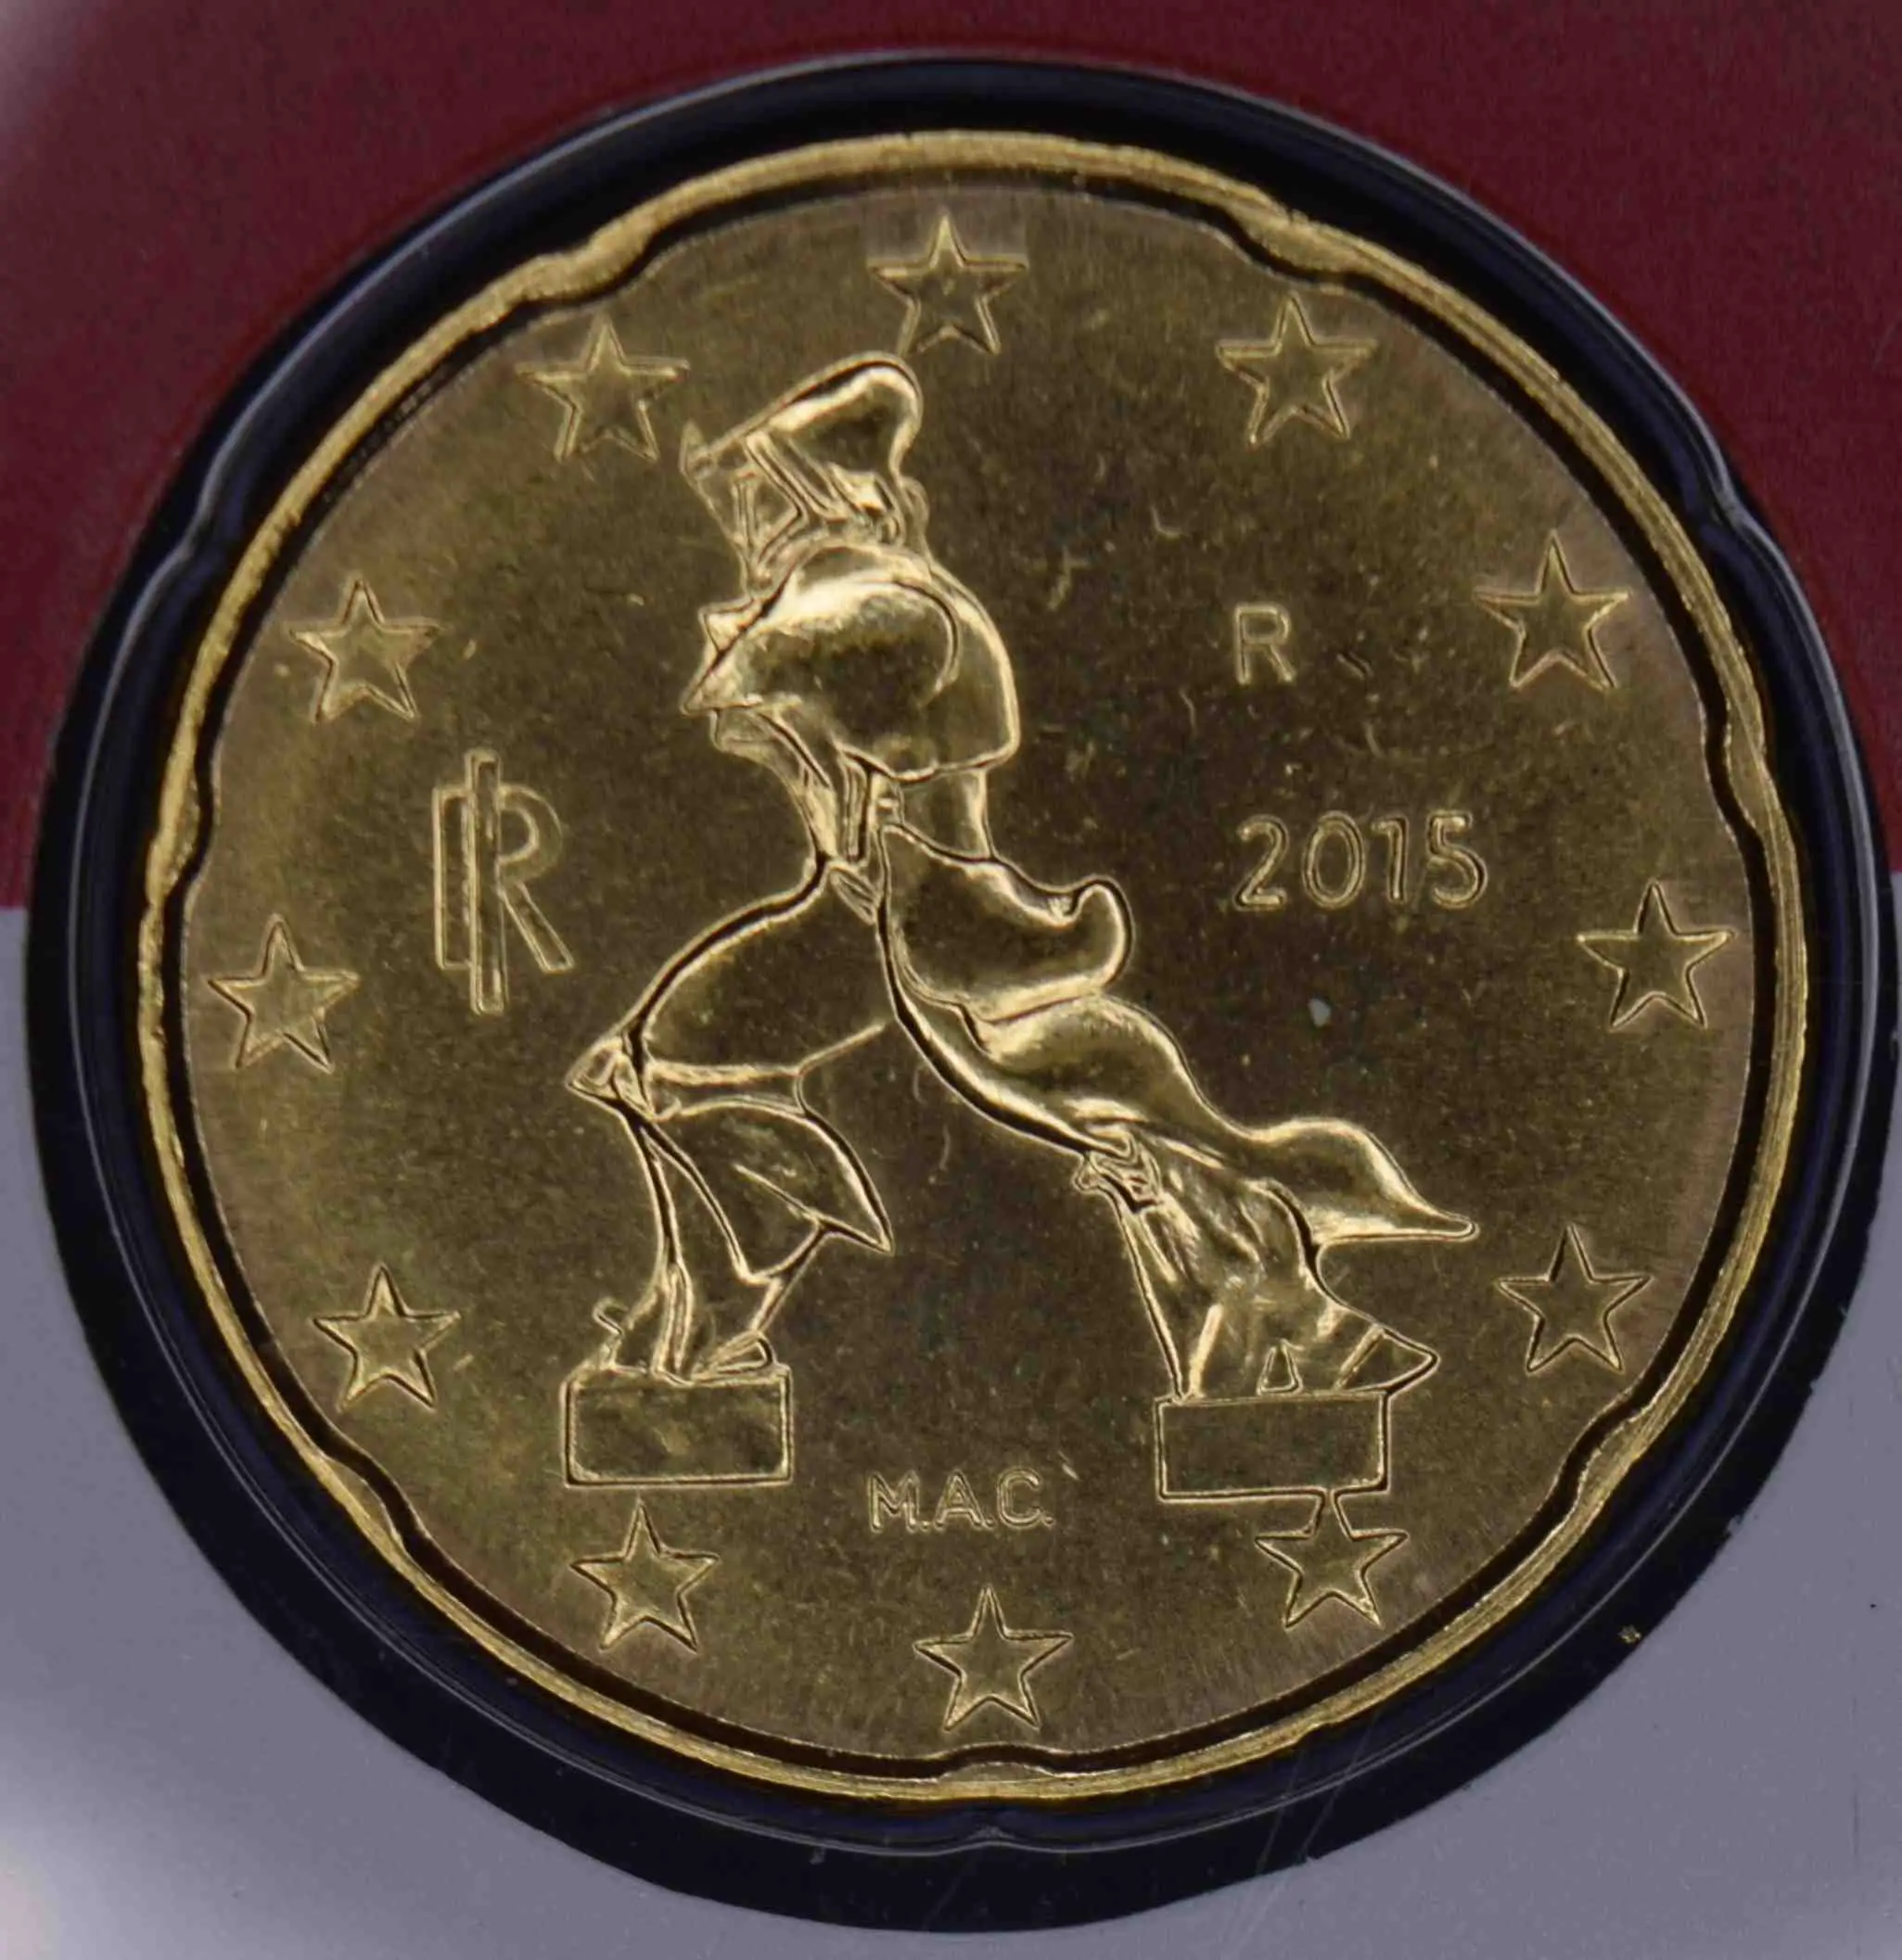 Italien Euro Kursmünzen 2015 ᐅ Wert, Infos und Bilder bei euro-muenzen.tv